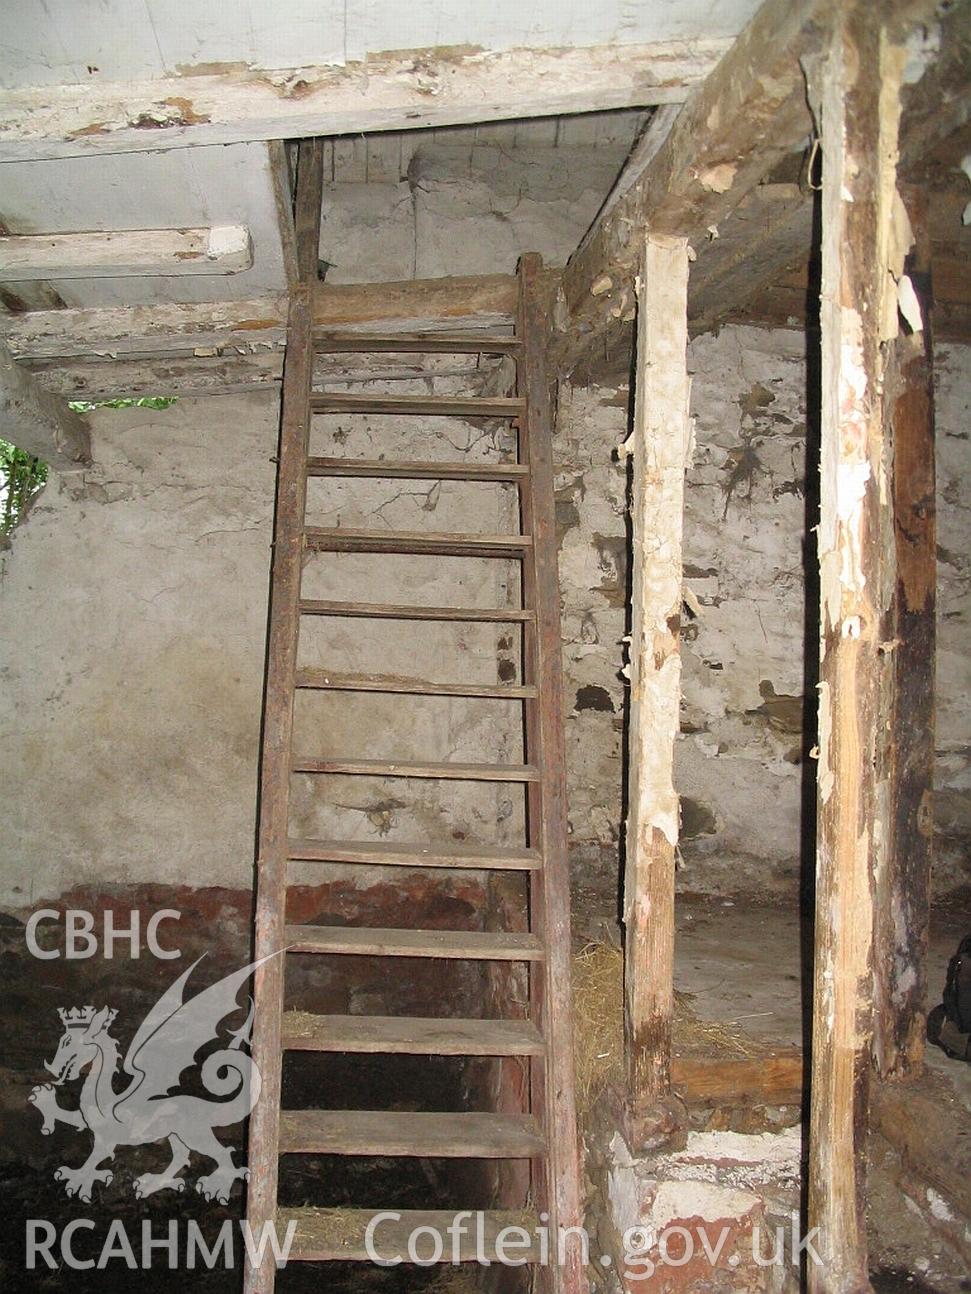 Dwelling end of Allt Ddu farmhouse, ladder stair.